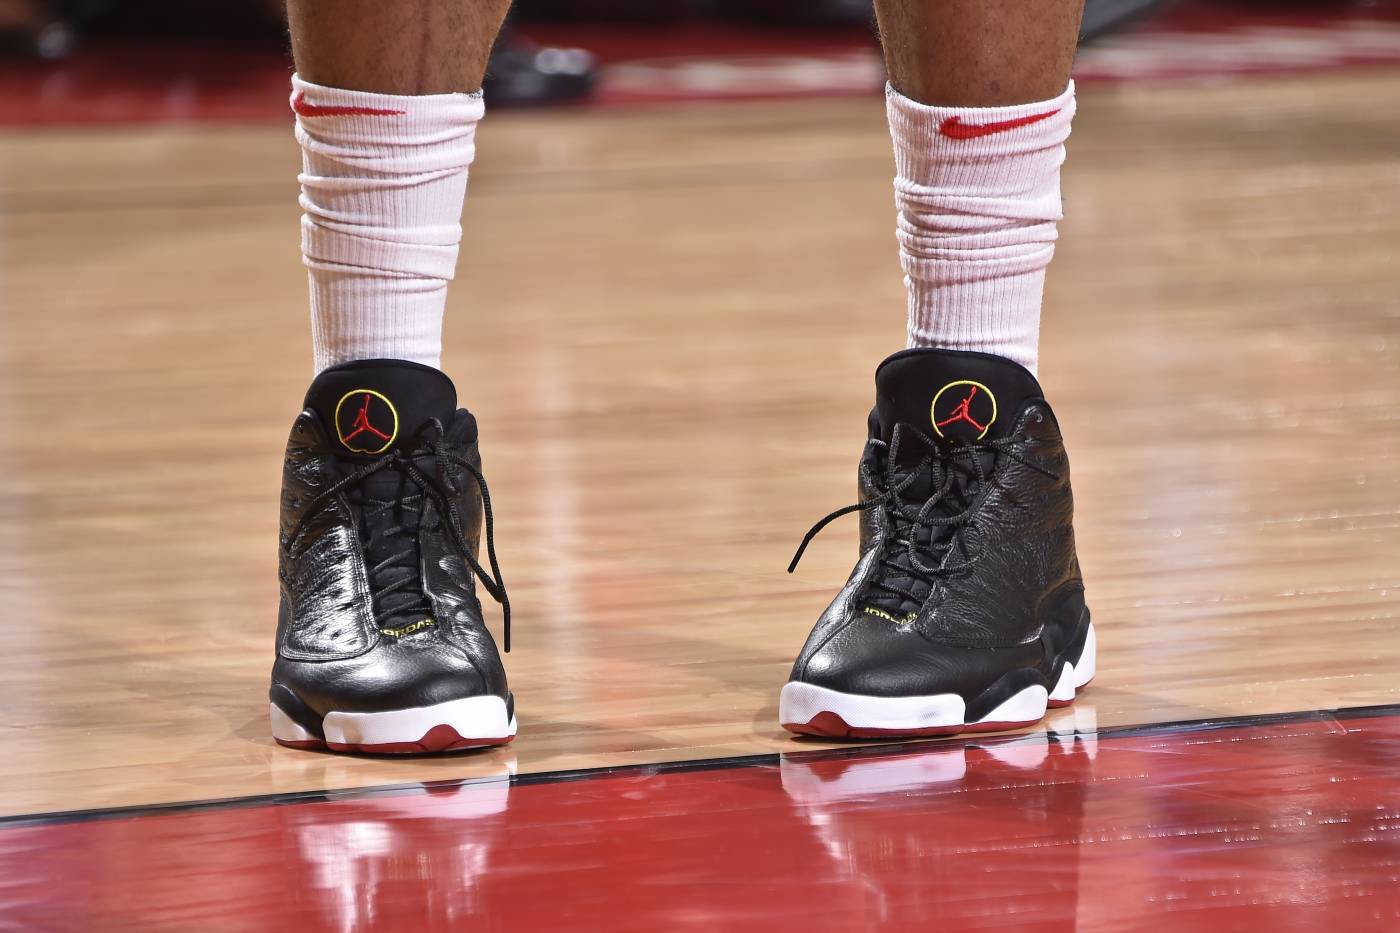 Chi tiết và đầy đủ các mẫu giày khủng của Thánh giày P.J. Tucker tại NBA Playoffs 2018 (kỳ 1) - Ảnh 6.